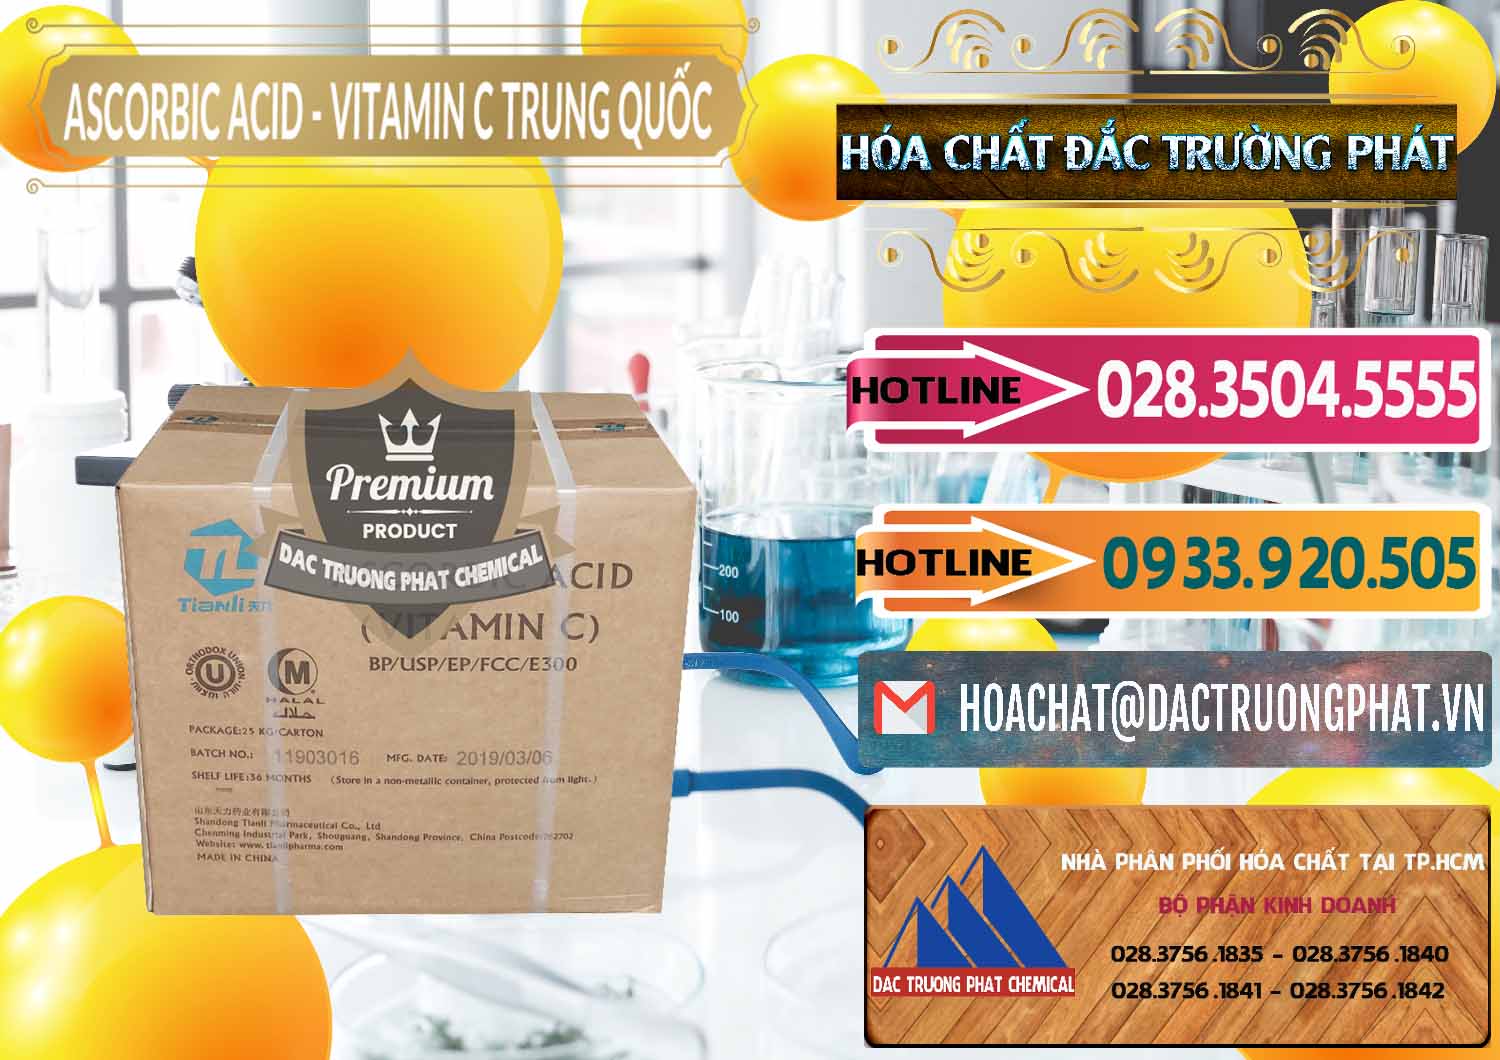 Cty chuyên kinh doanh _ bán Axit Ascorbic - Vitamin C Trung Quốc China - 0309 - Nơi chuyên phân phối - kinh doanh hóa chất tại TP.HCM - dactruongphat.vn